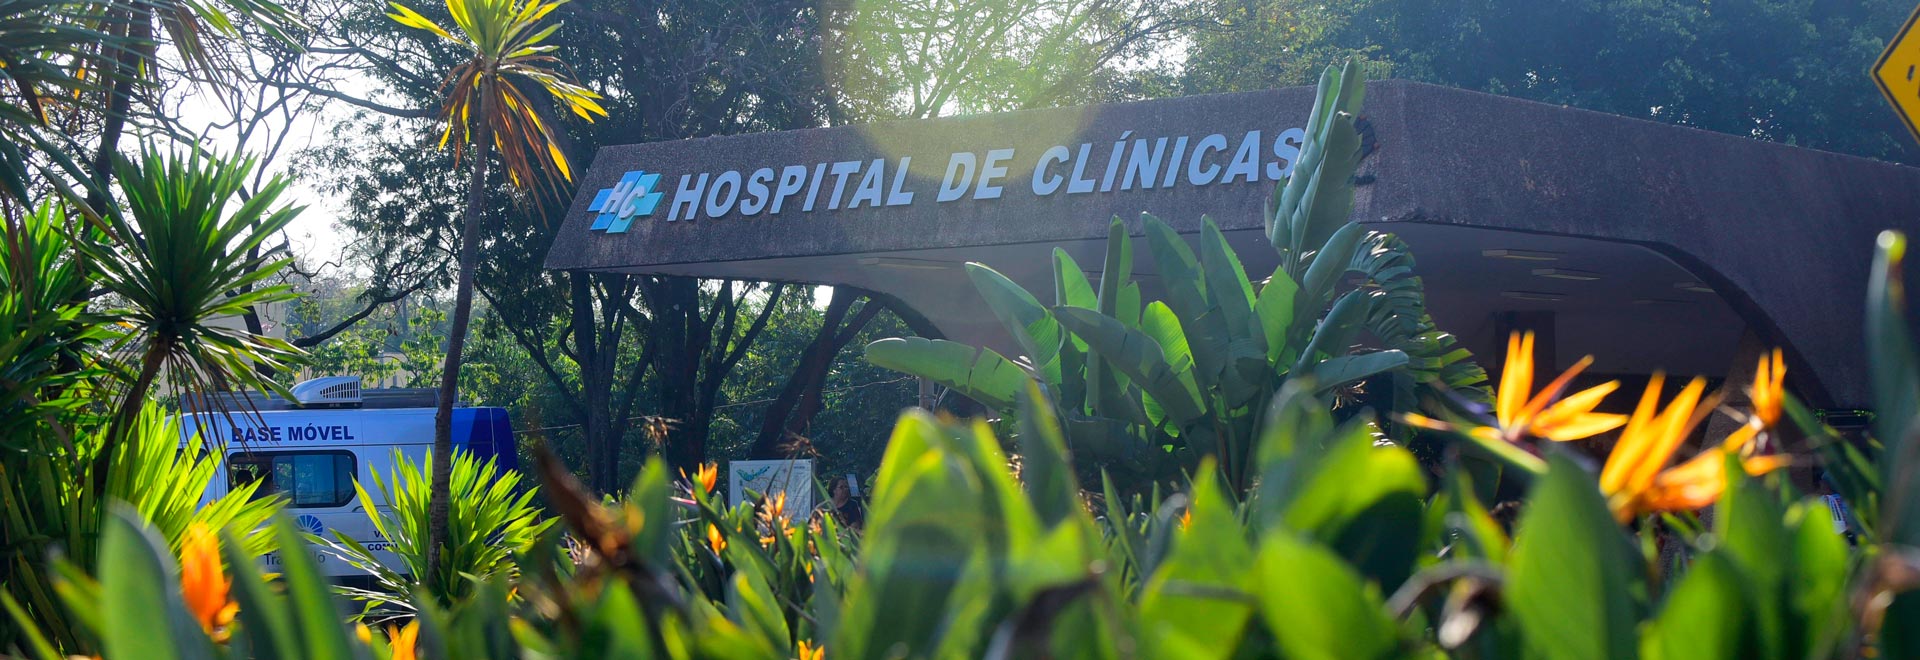 audiodescrição: fotografia colorida da fachada do Hospital de clínicas da Unicamp. clique enter para acessar